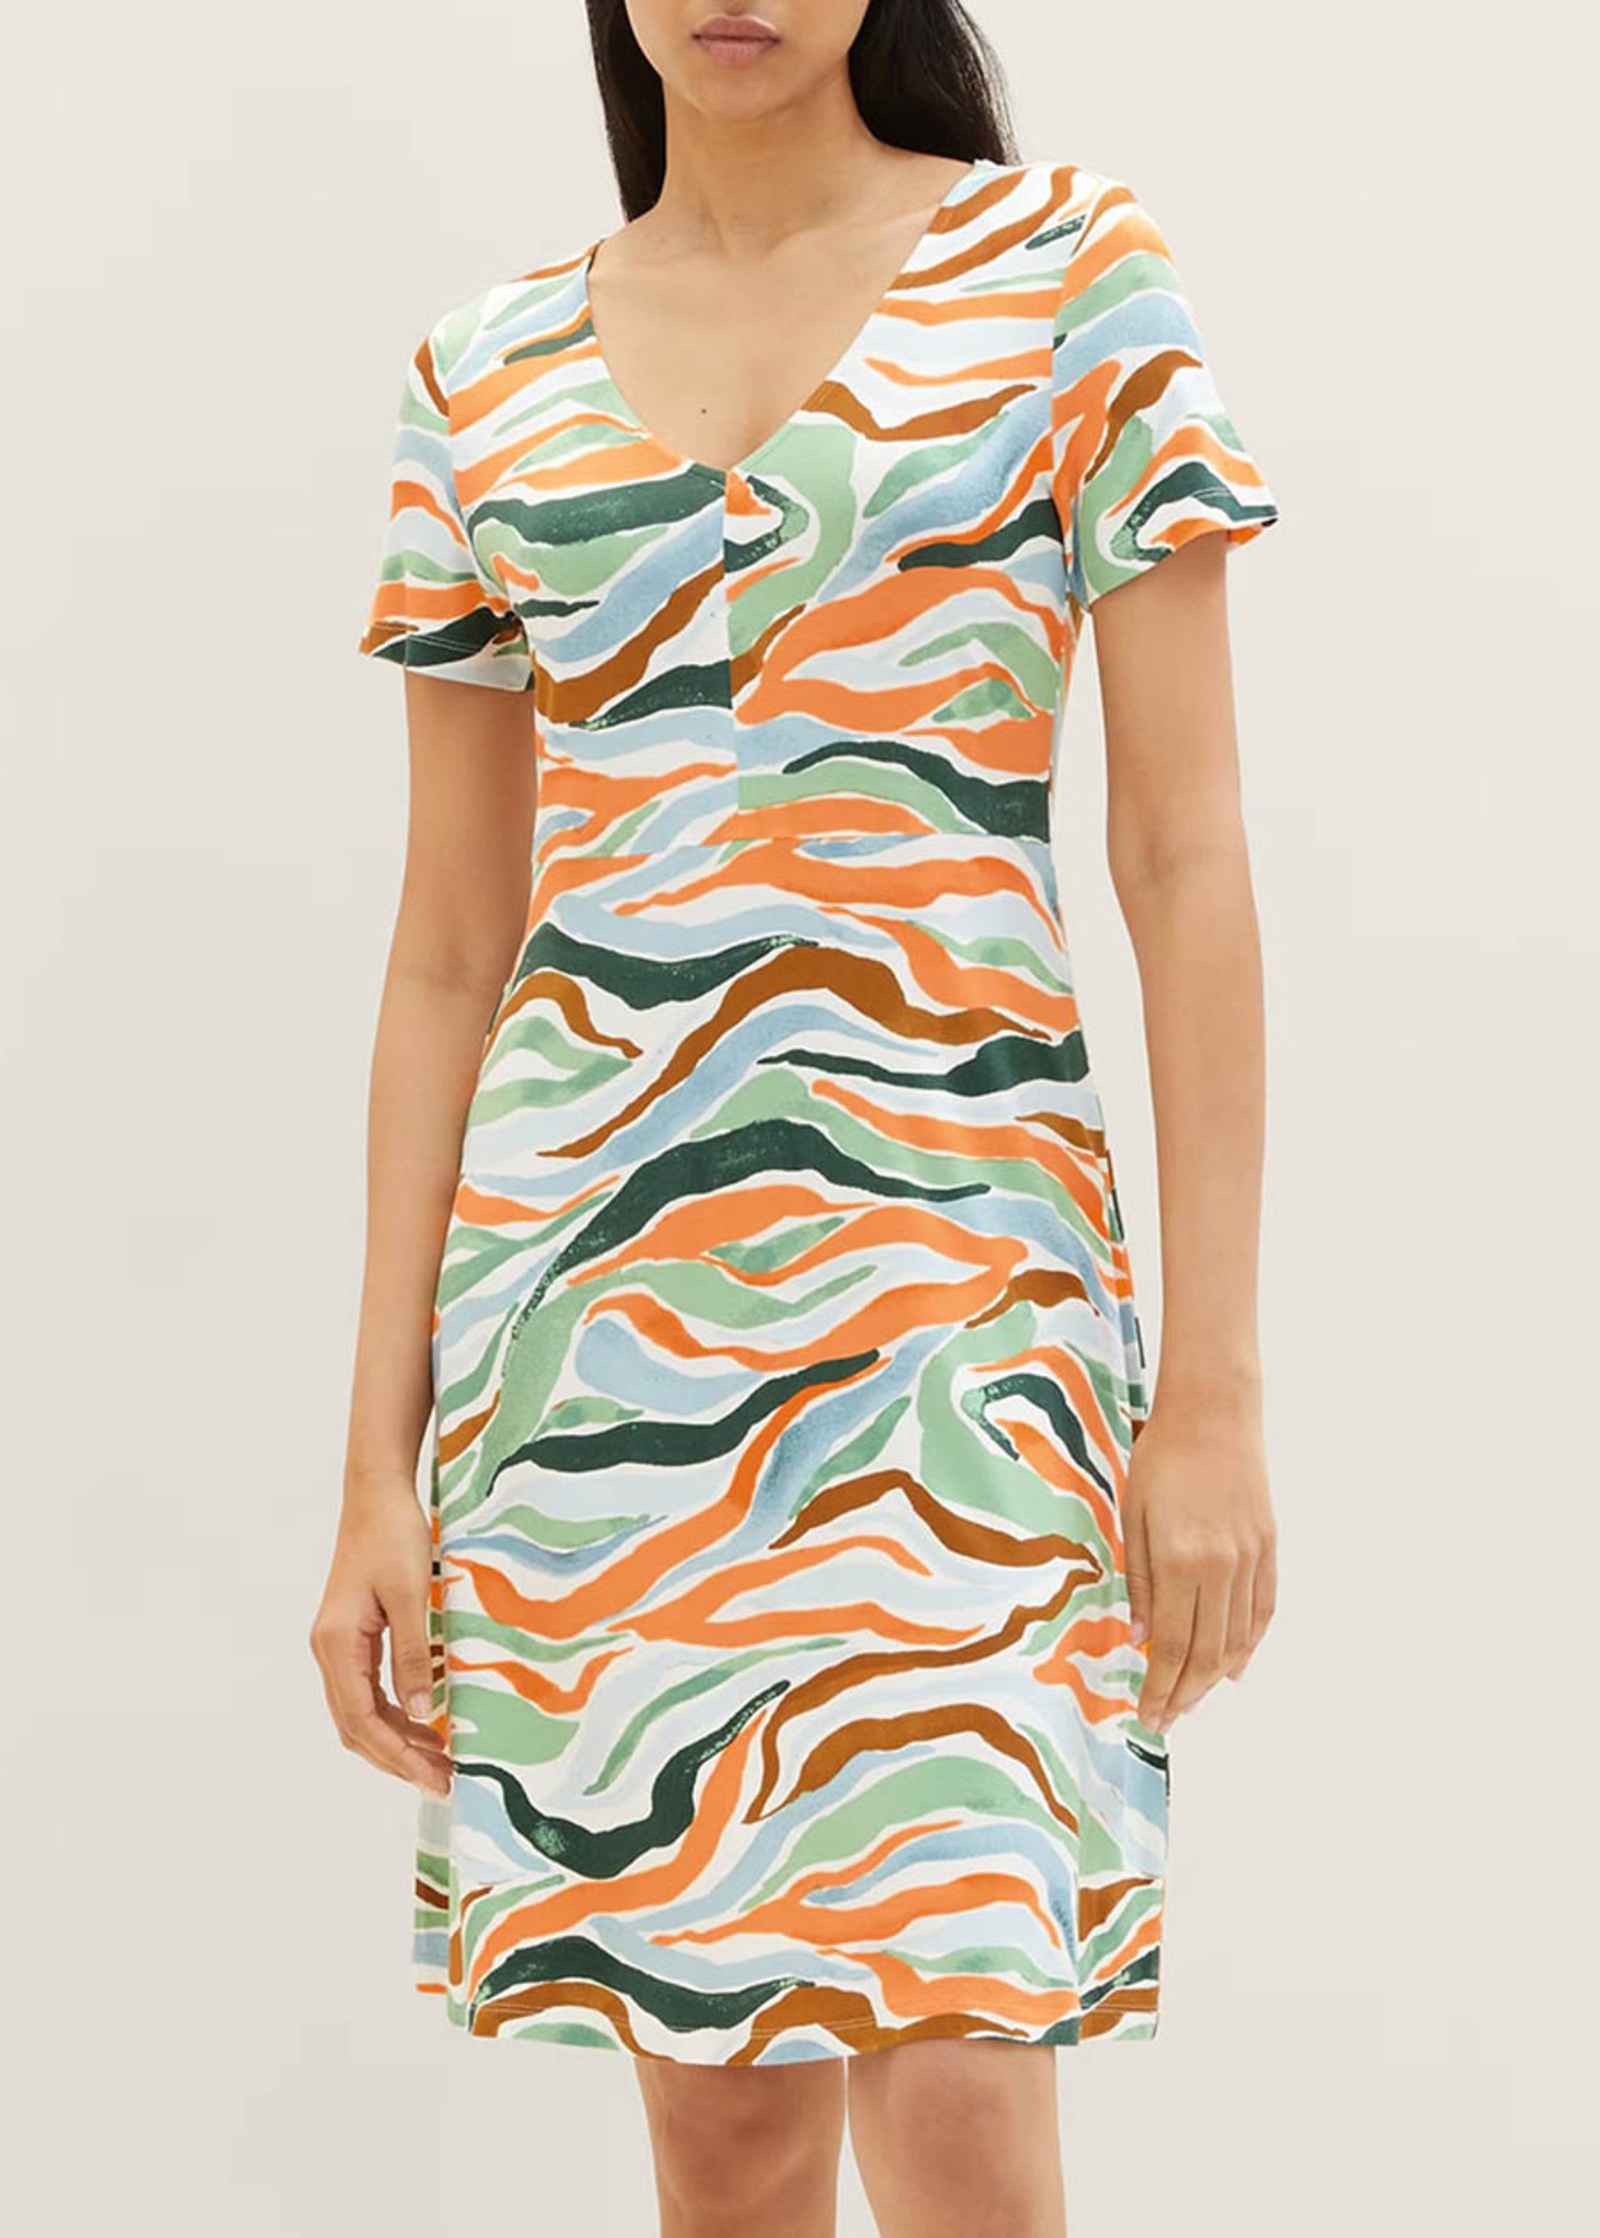 Tom Tailor® Dress - Colorful Wavy Design Größe 38